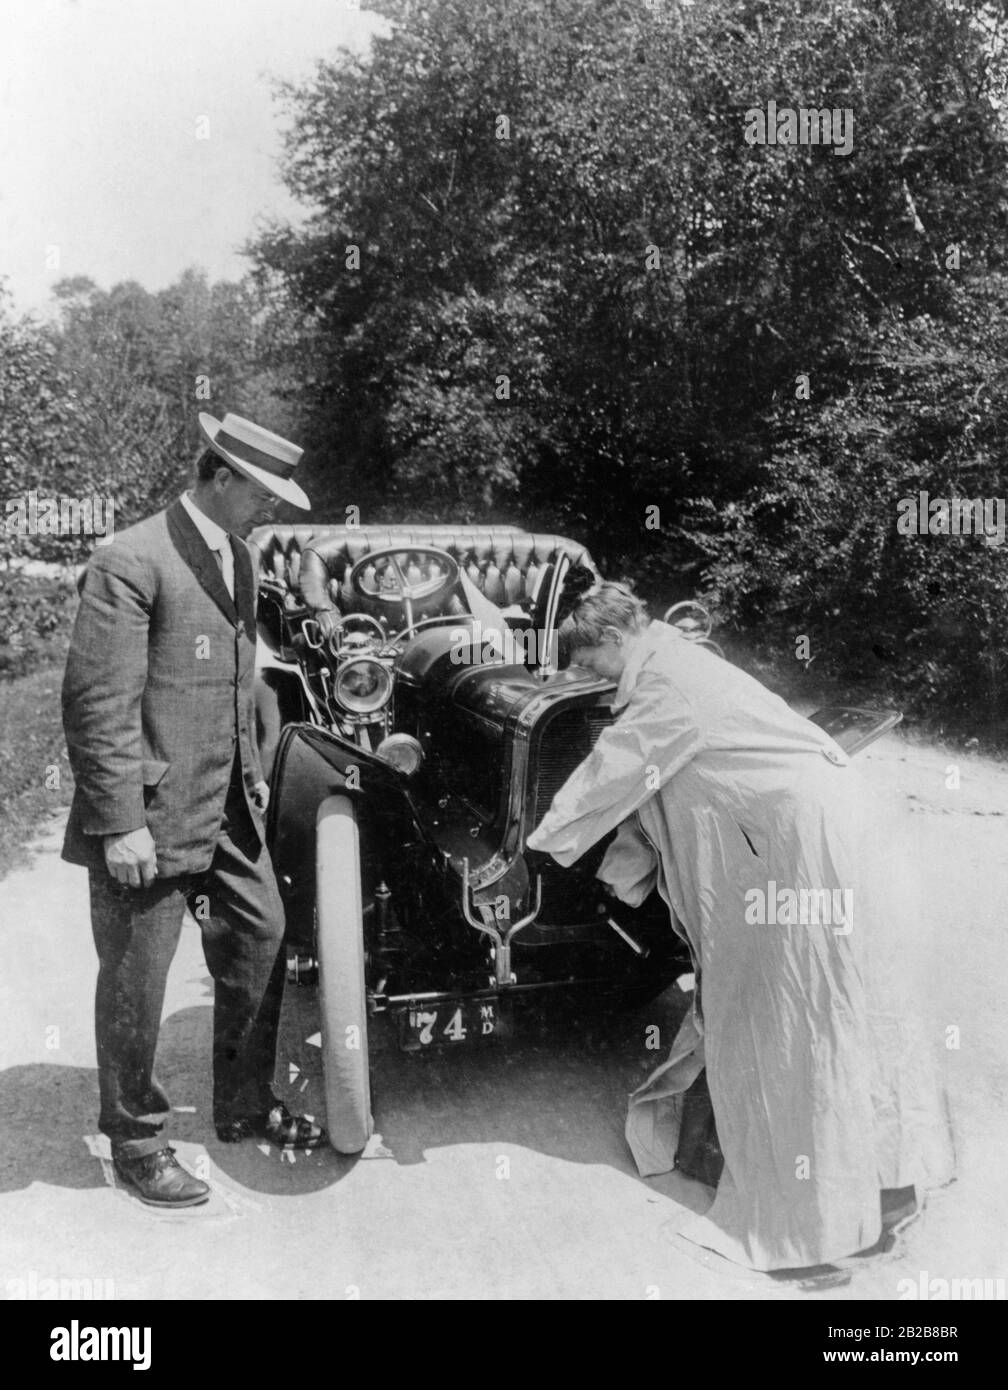 Una donna, che indossa uno smock per evitare di sporcarsi, avvia il motore della sua auto per mezzo di una manovella, mentre l'uomo alla sua sinistra la guarda. Foto Stock